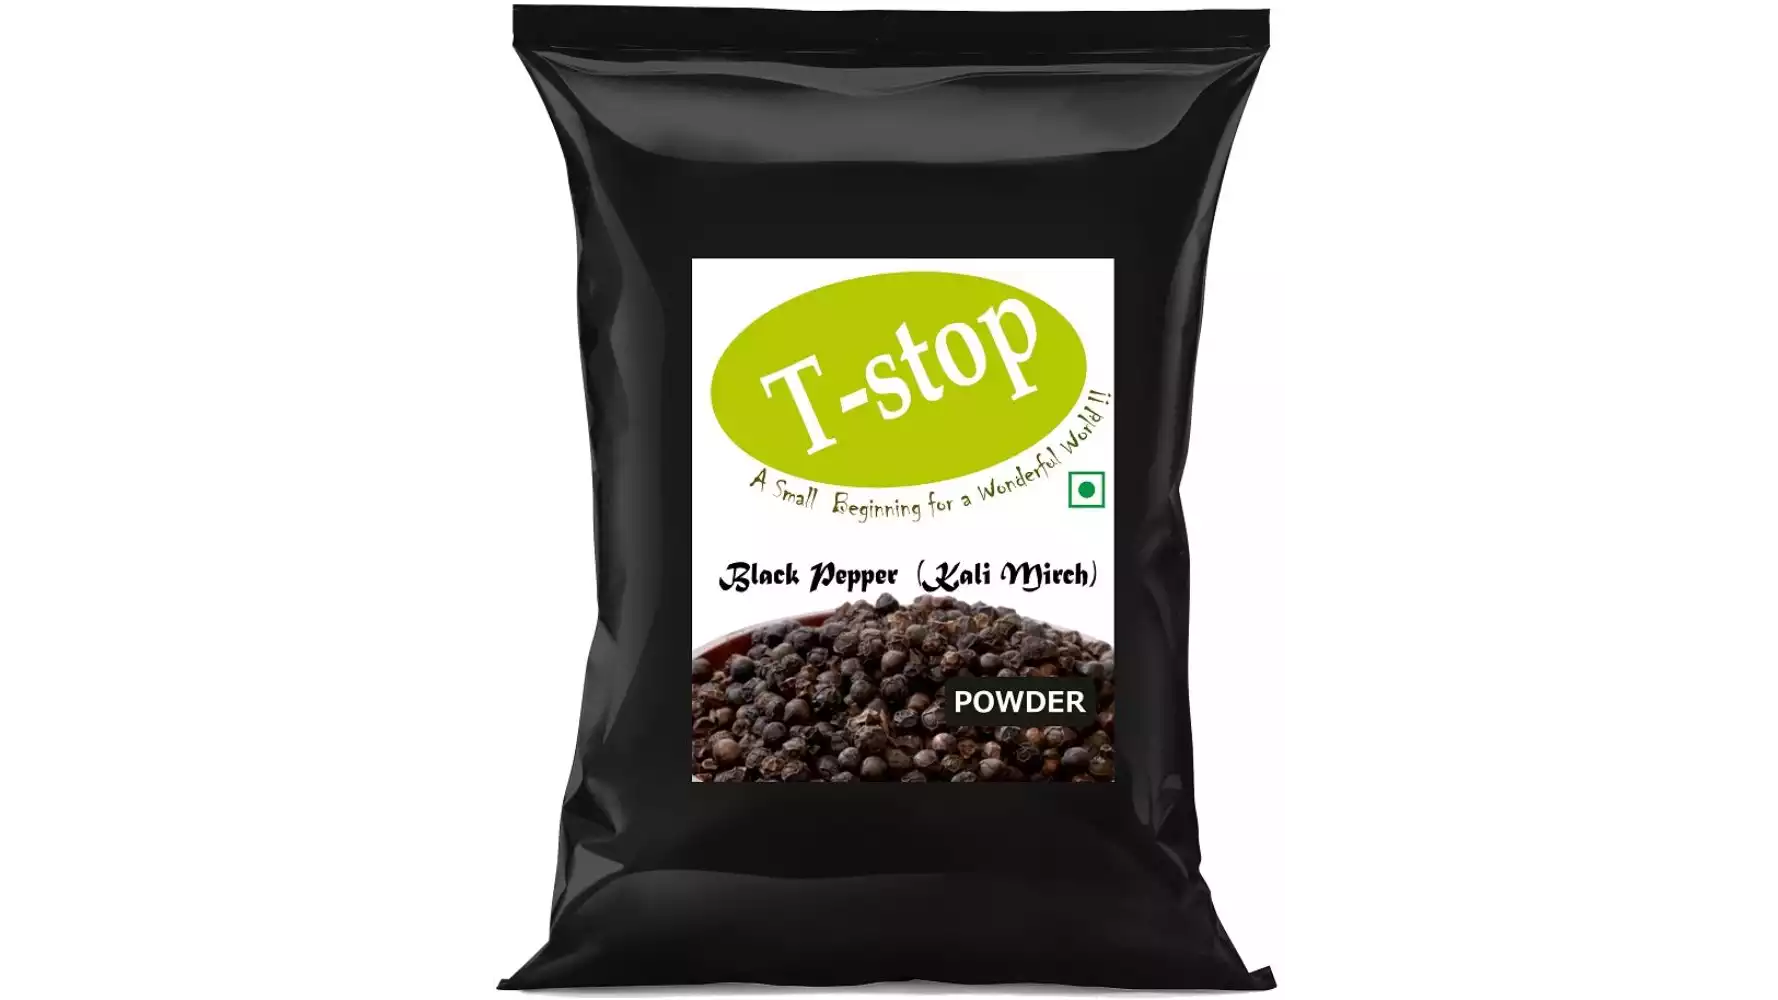 T-stop Black Pepper Powder (Kali Mirch) (50g)